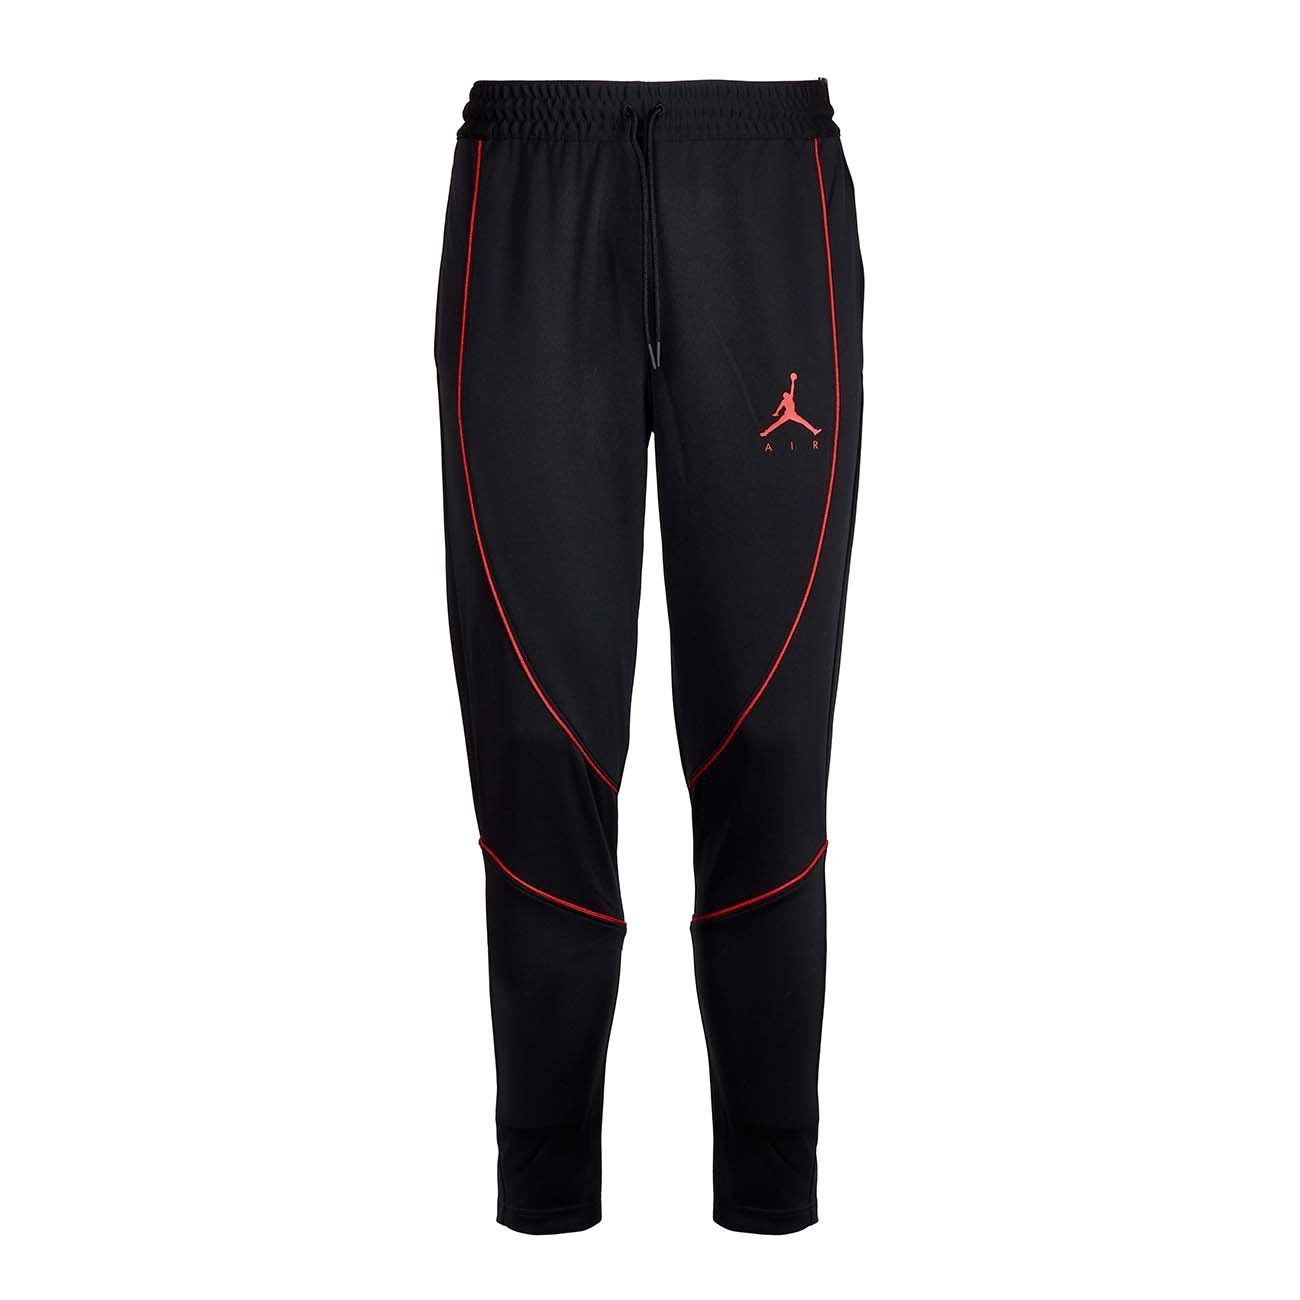 jordan sweatpants black and red